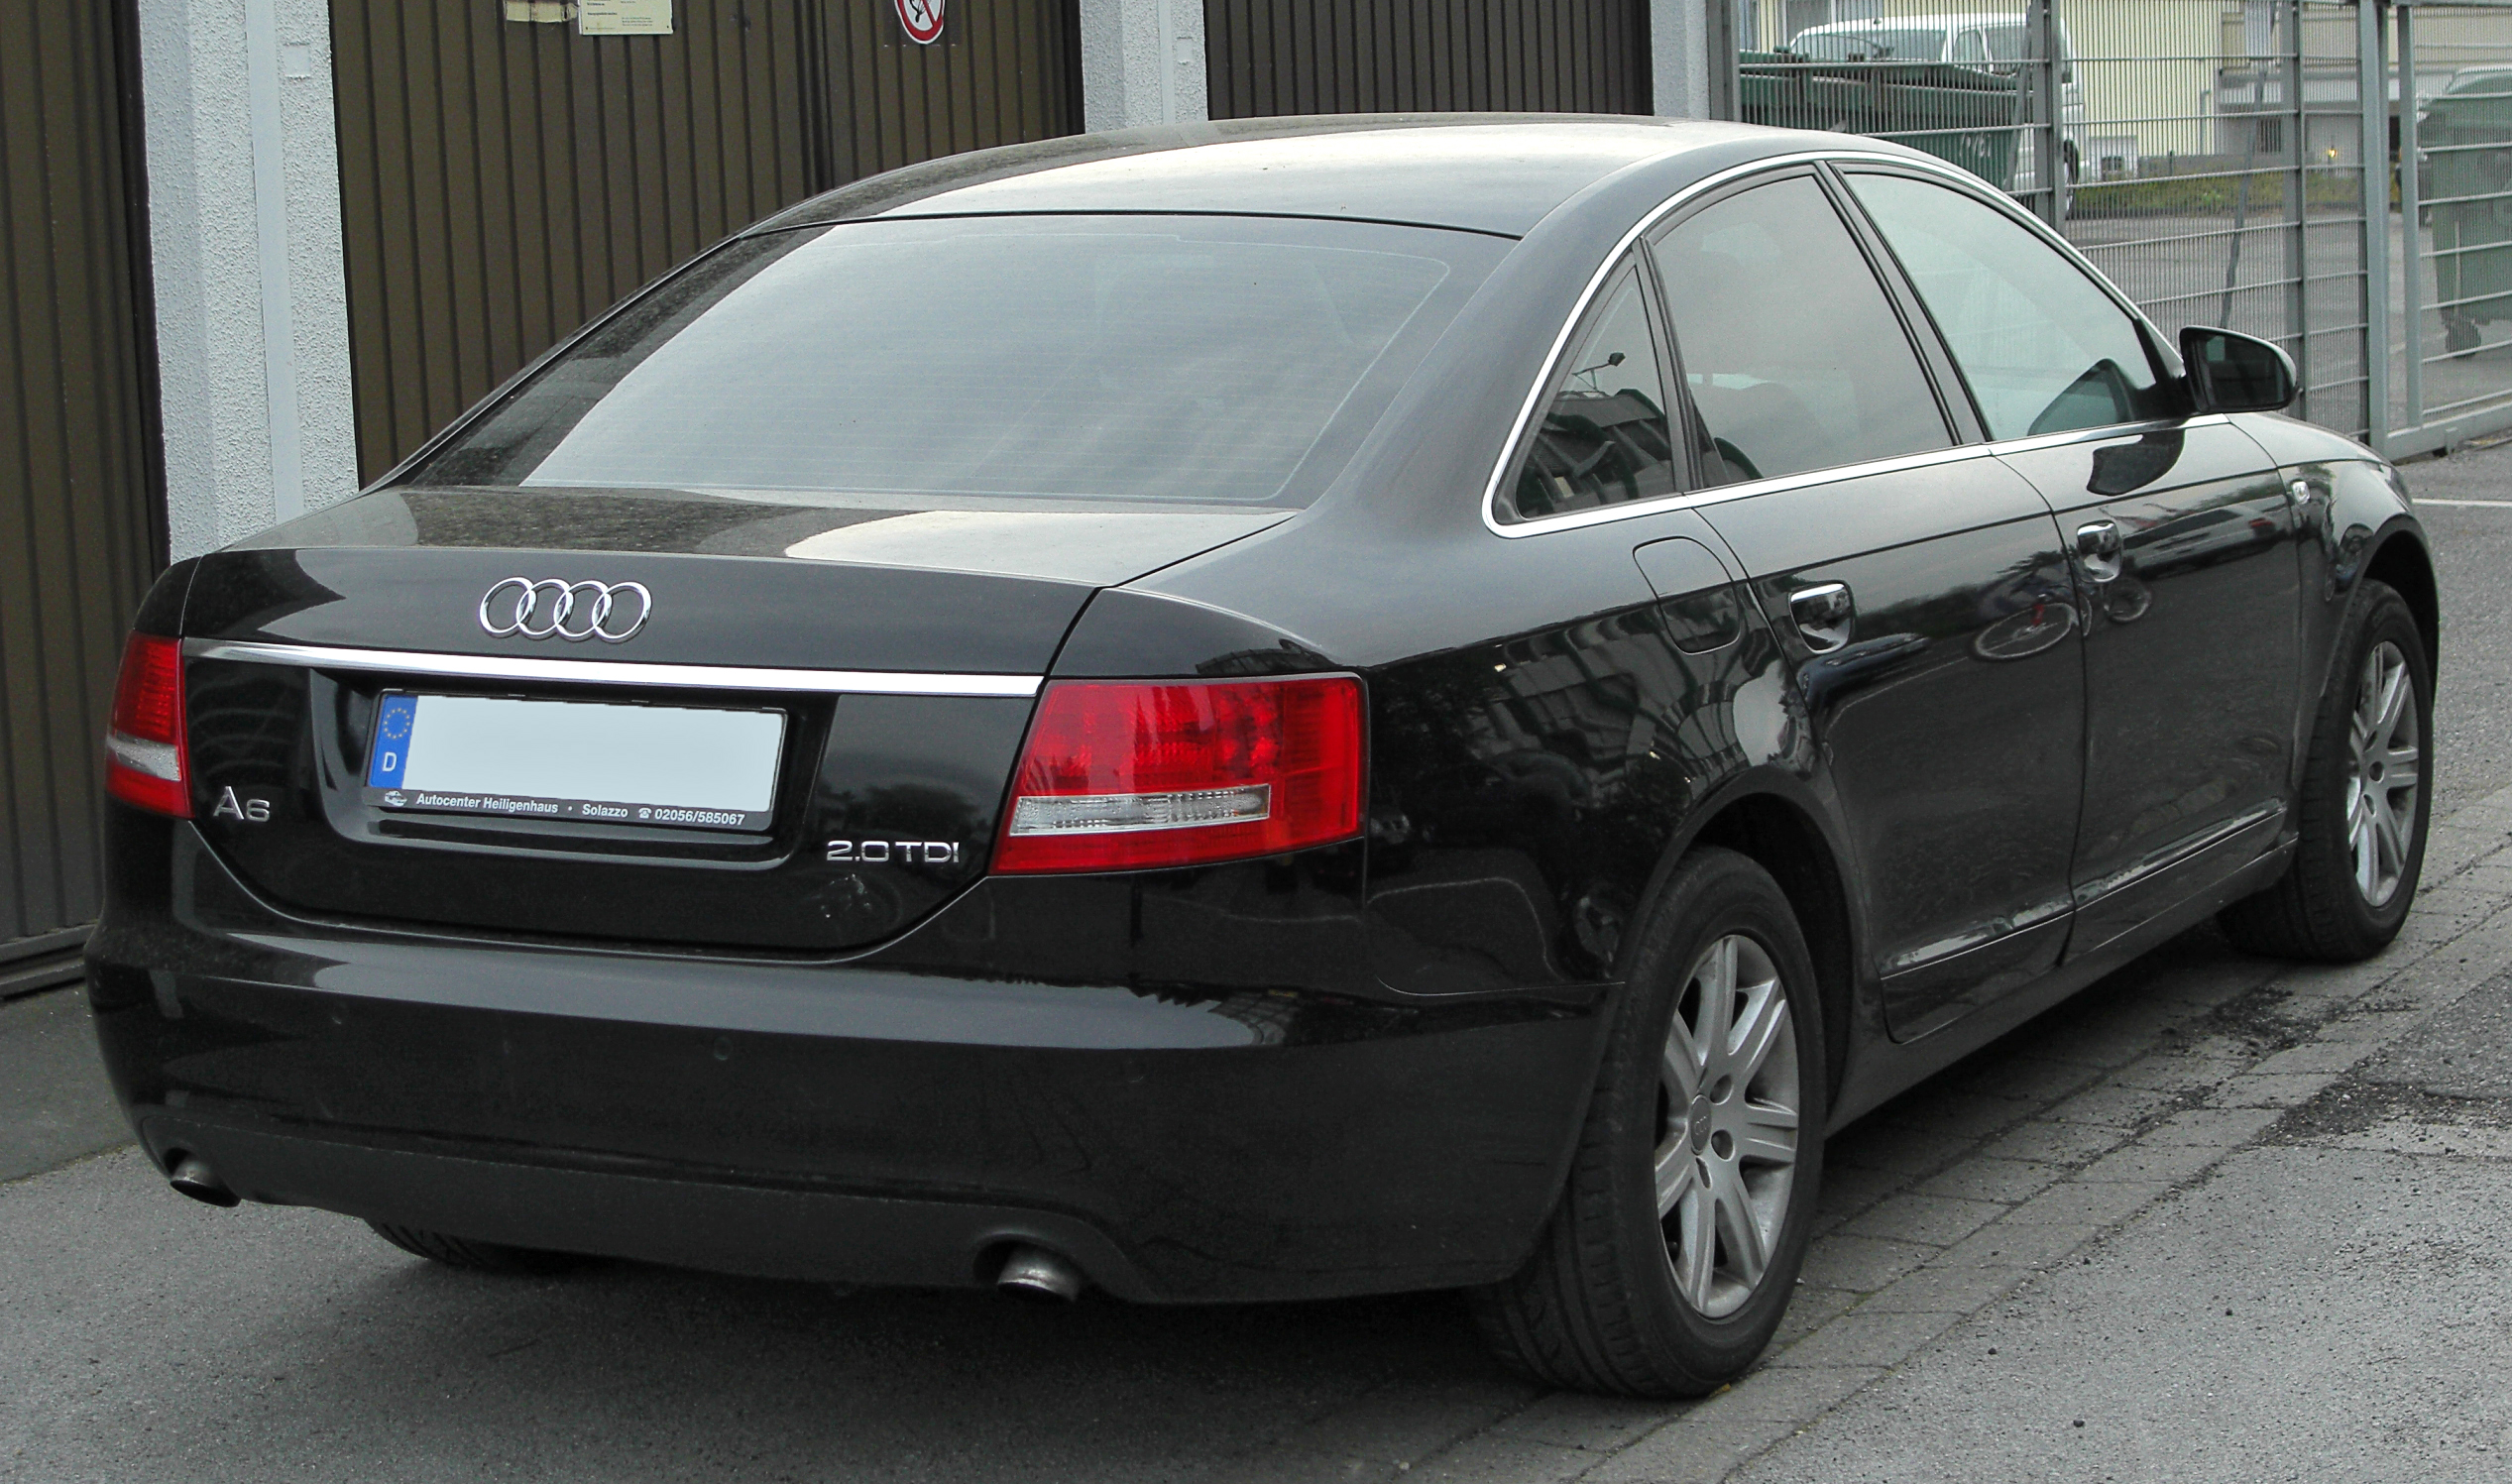 File:Audi-A6-C6.jpg - Wikipedia